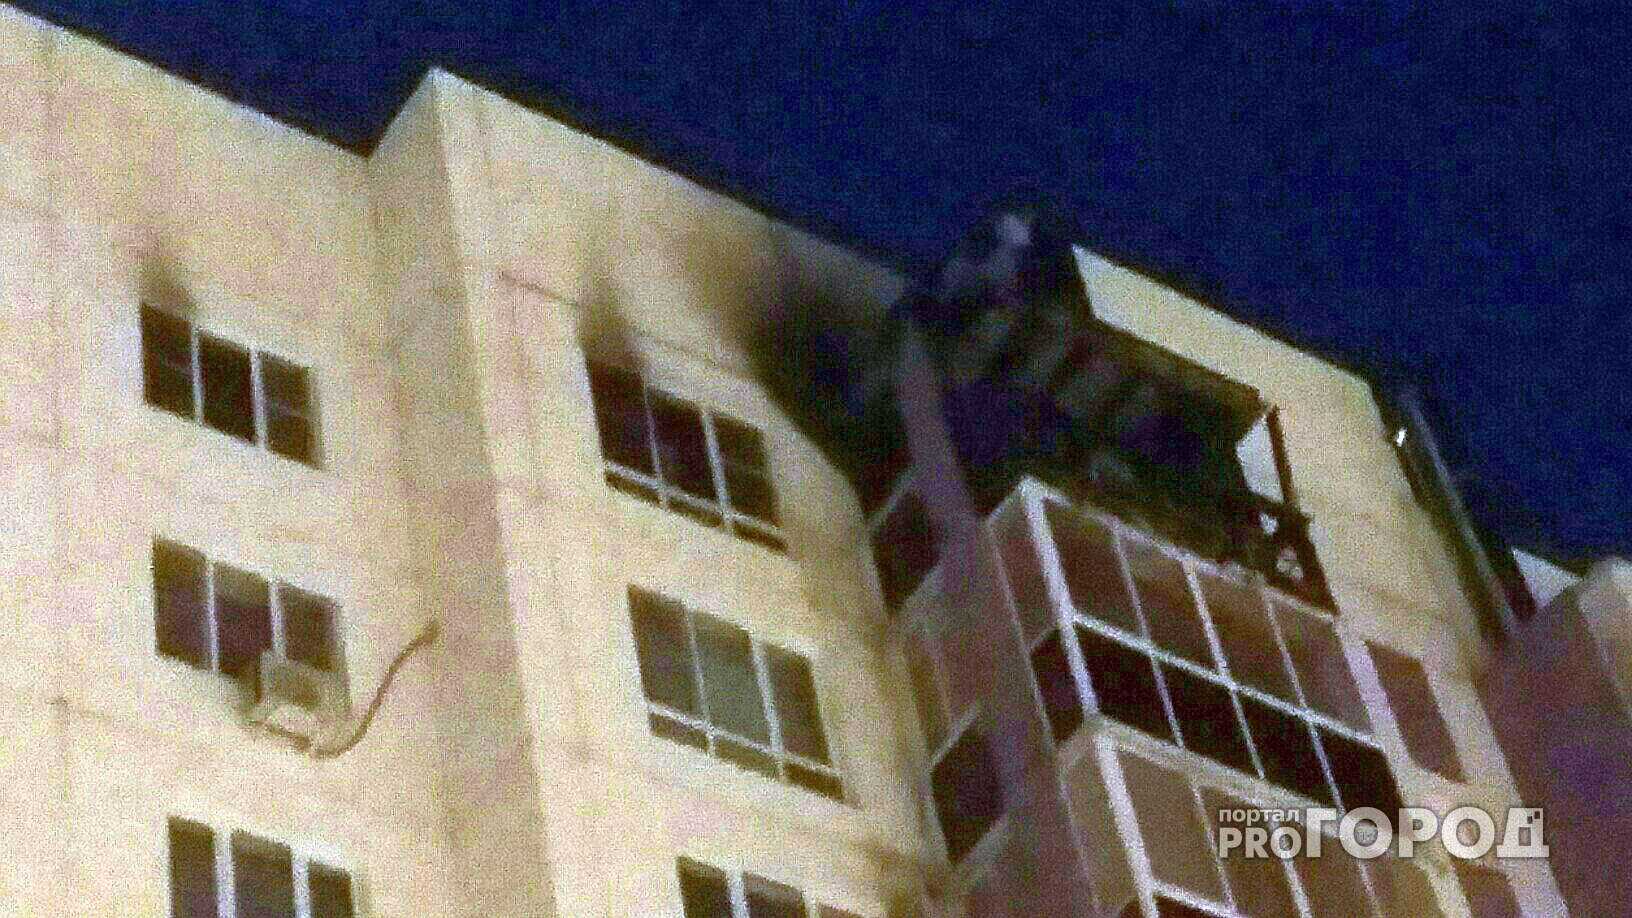 В Чебоксарах выстрел фейерверка попал прямо в окно квартиры